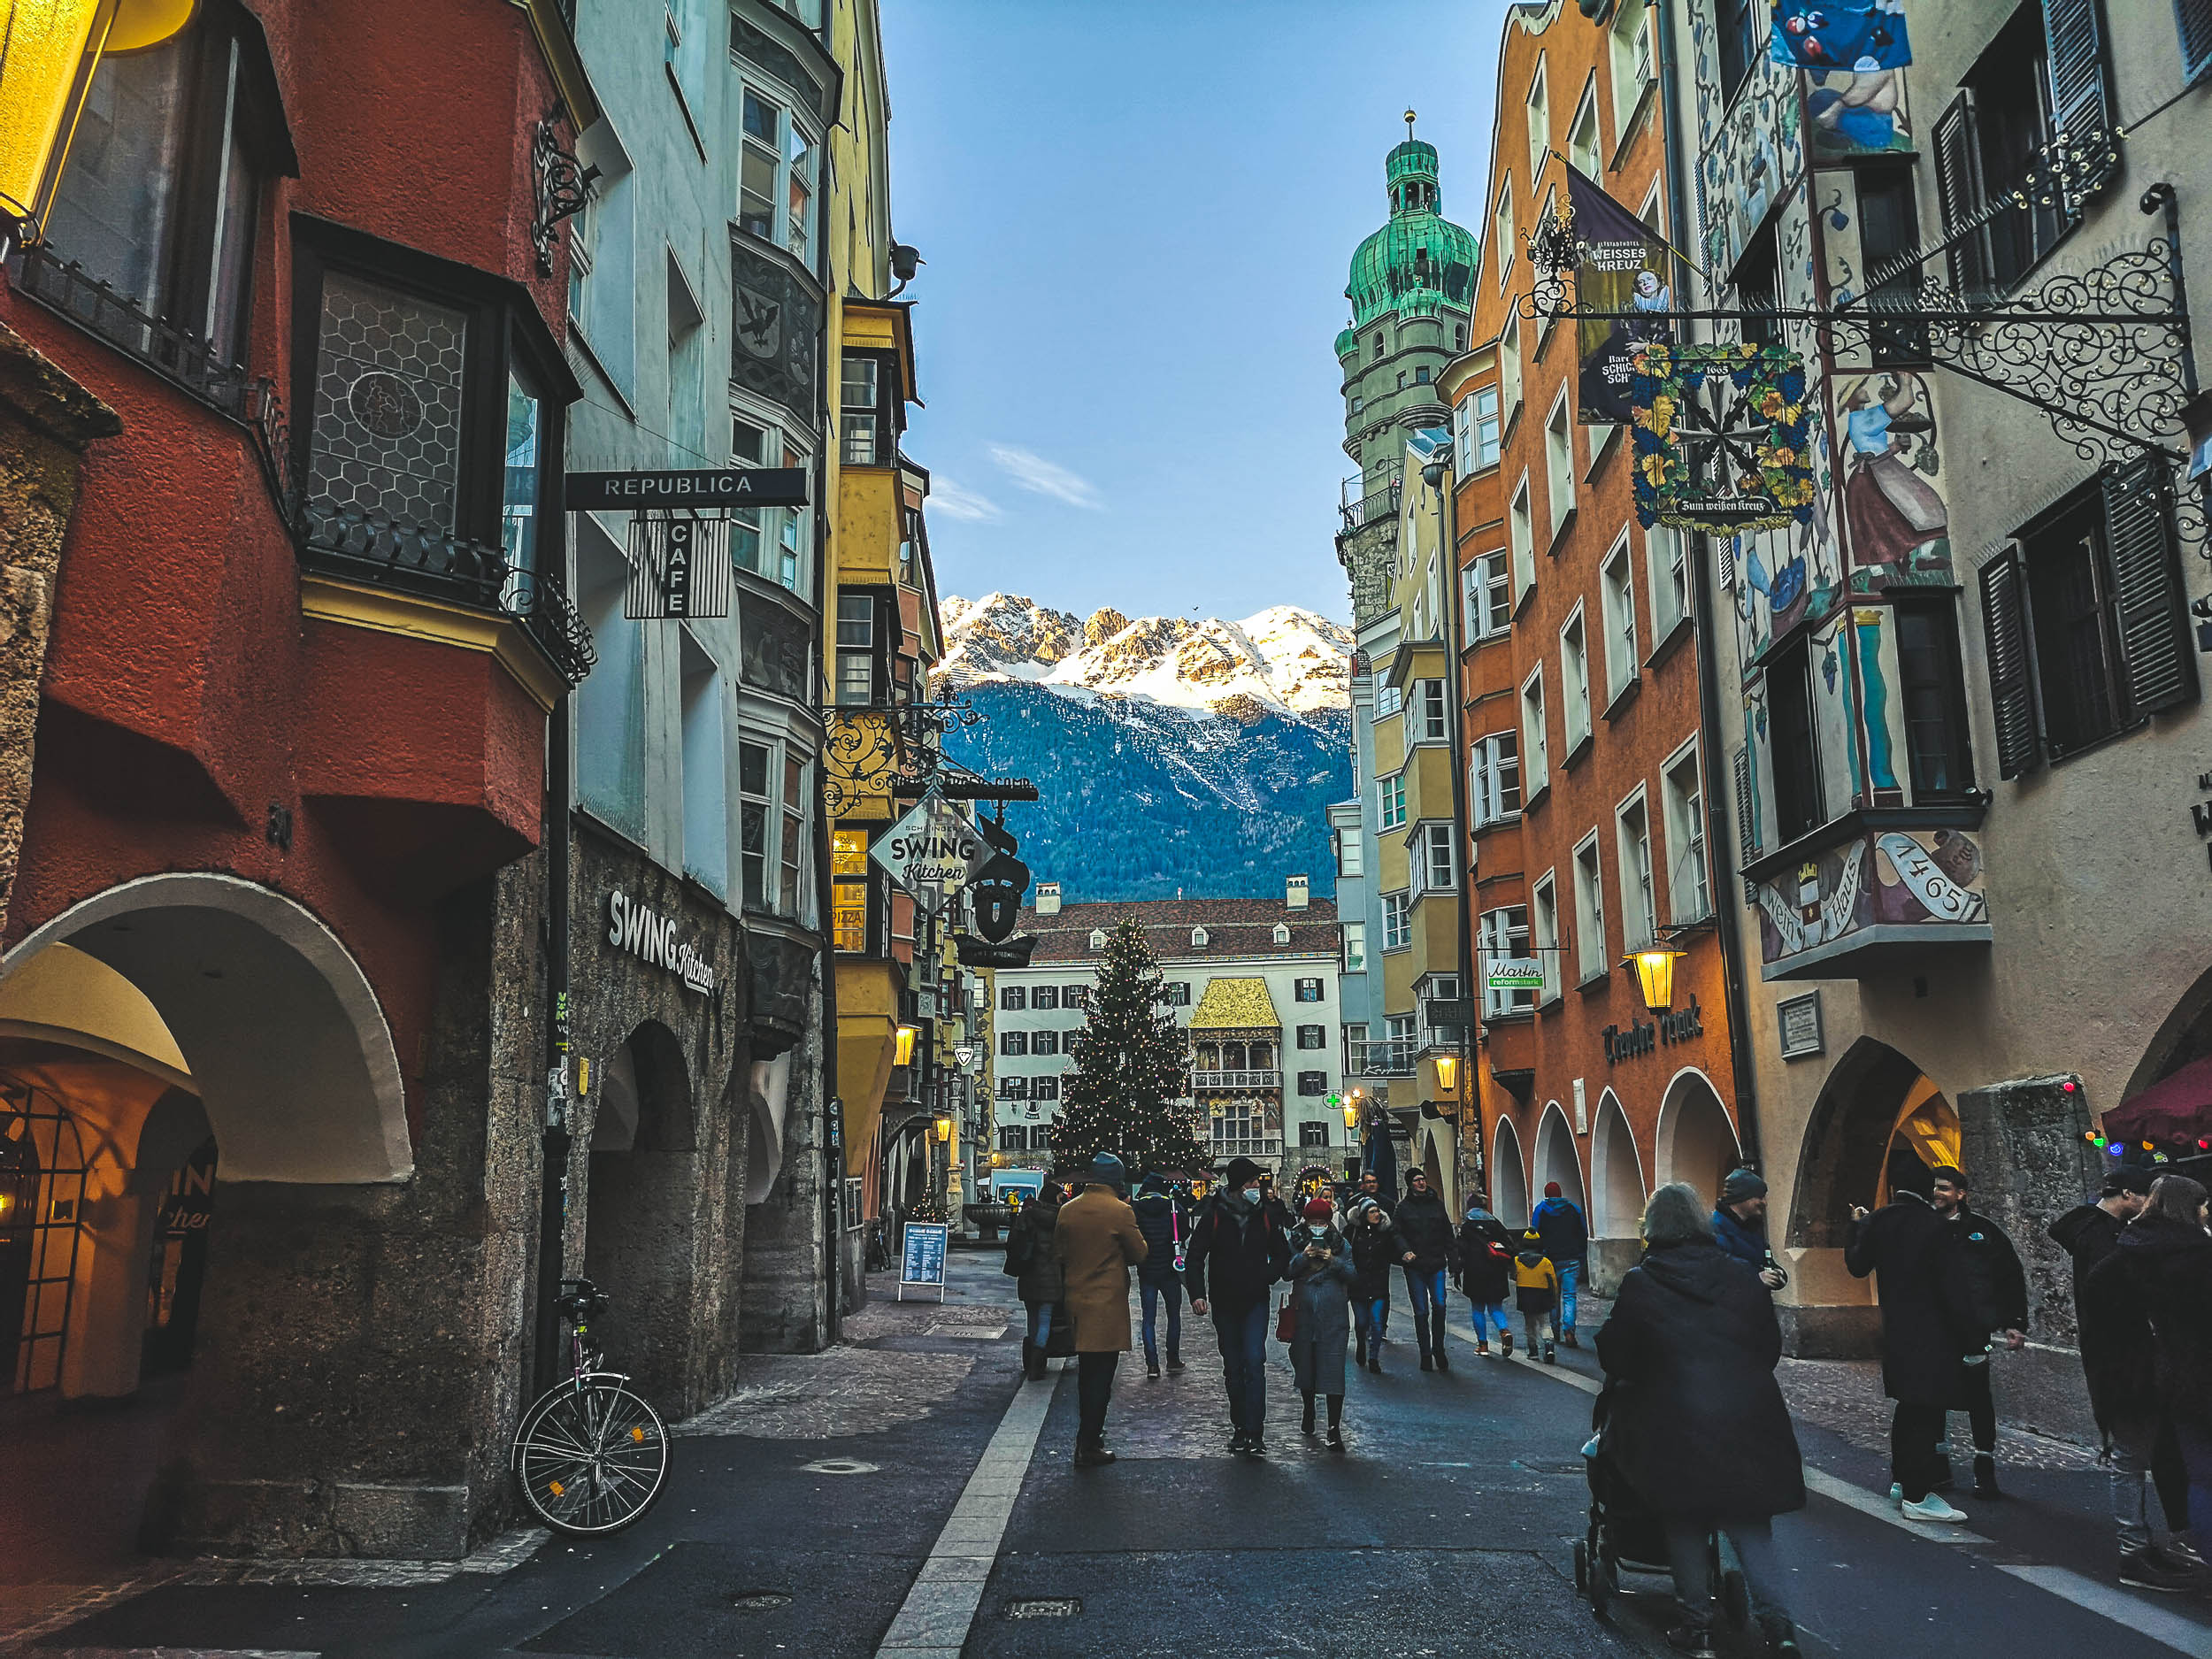 The oldtown of Innsbruck, Austria